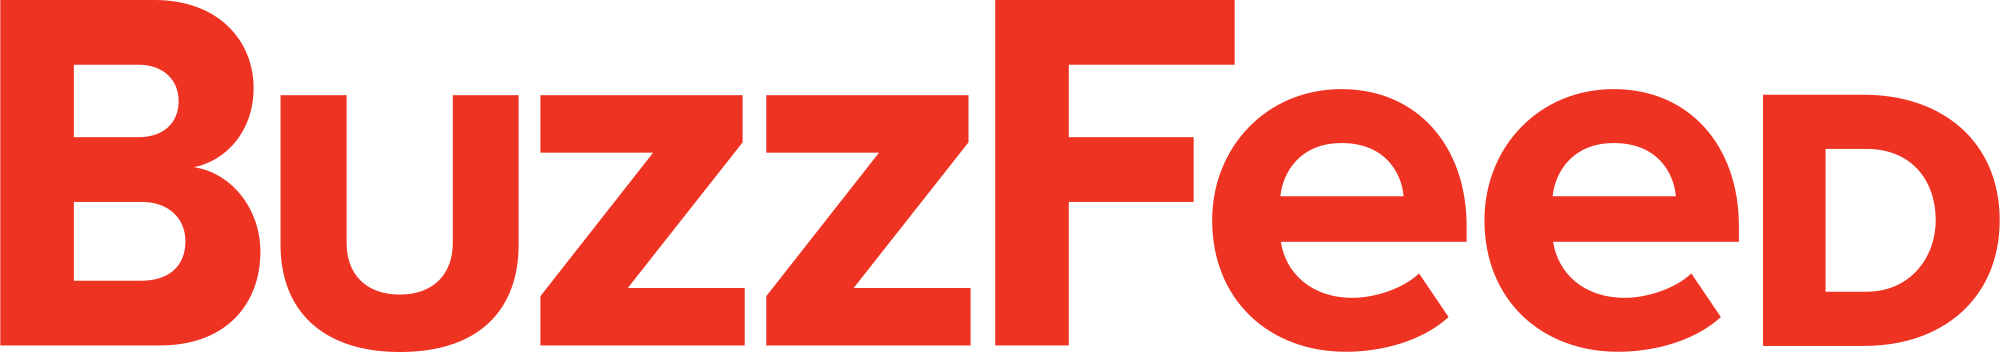 BuzzFeed Logo - BuzzFeed.svg